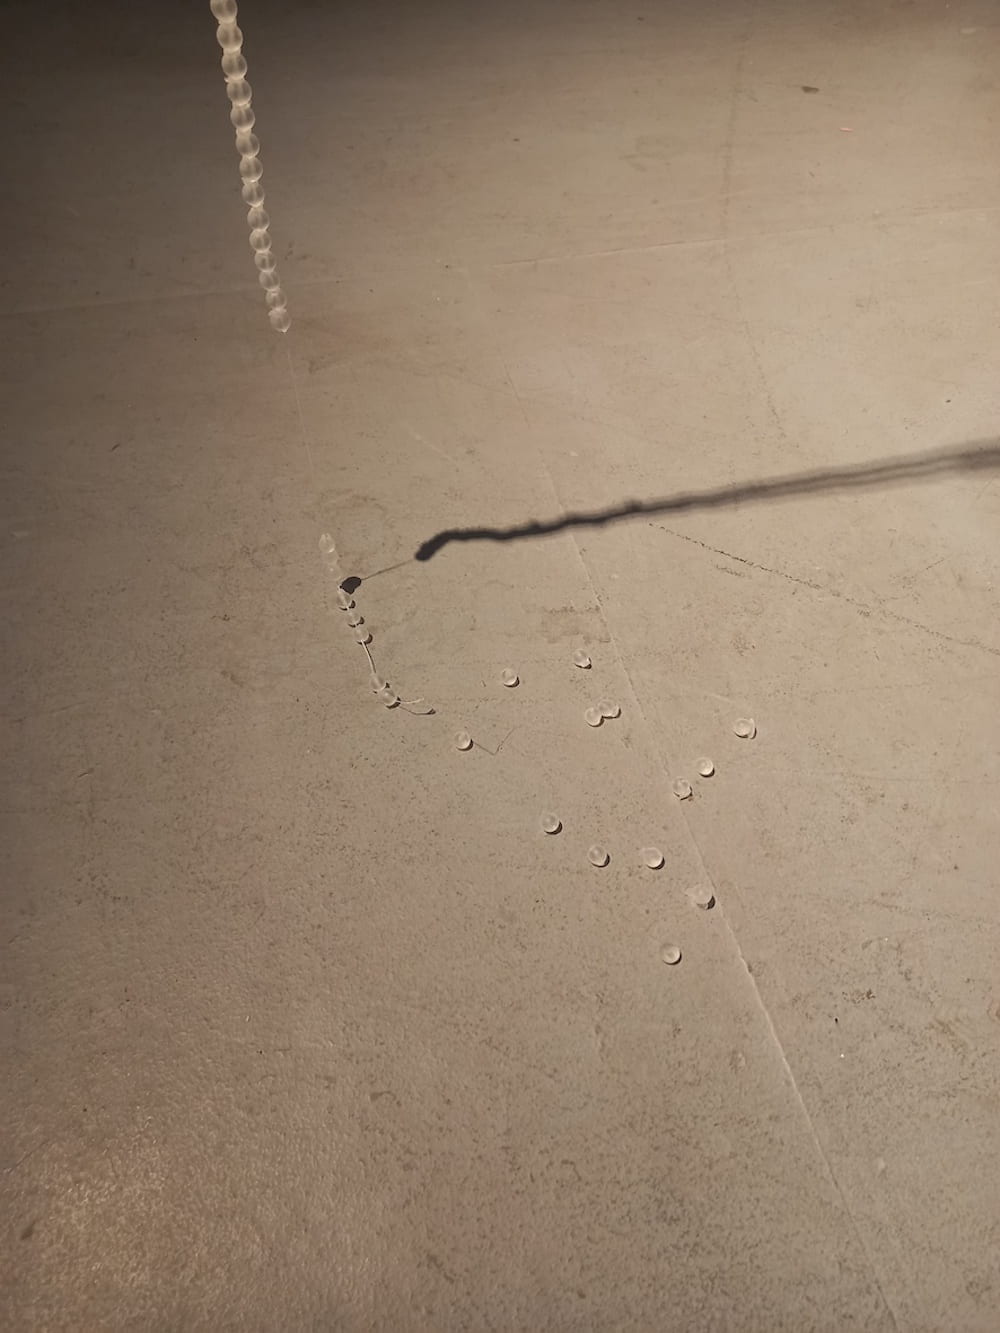 Grey floor with glass-like beads near a thread & shadow